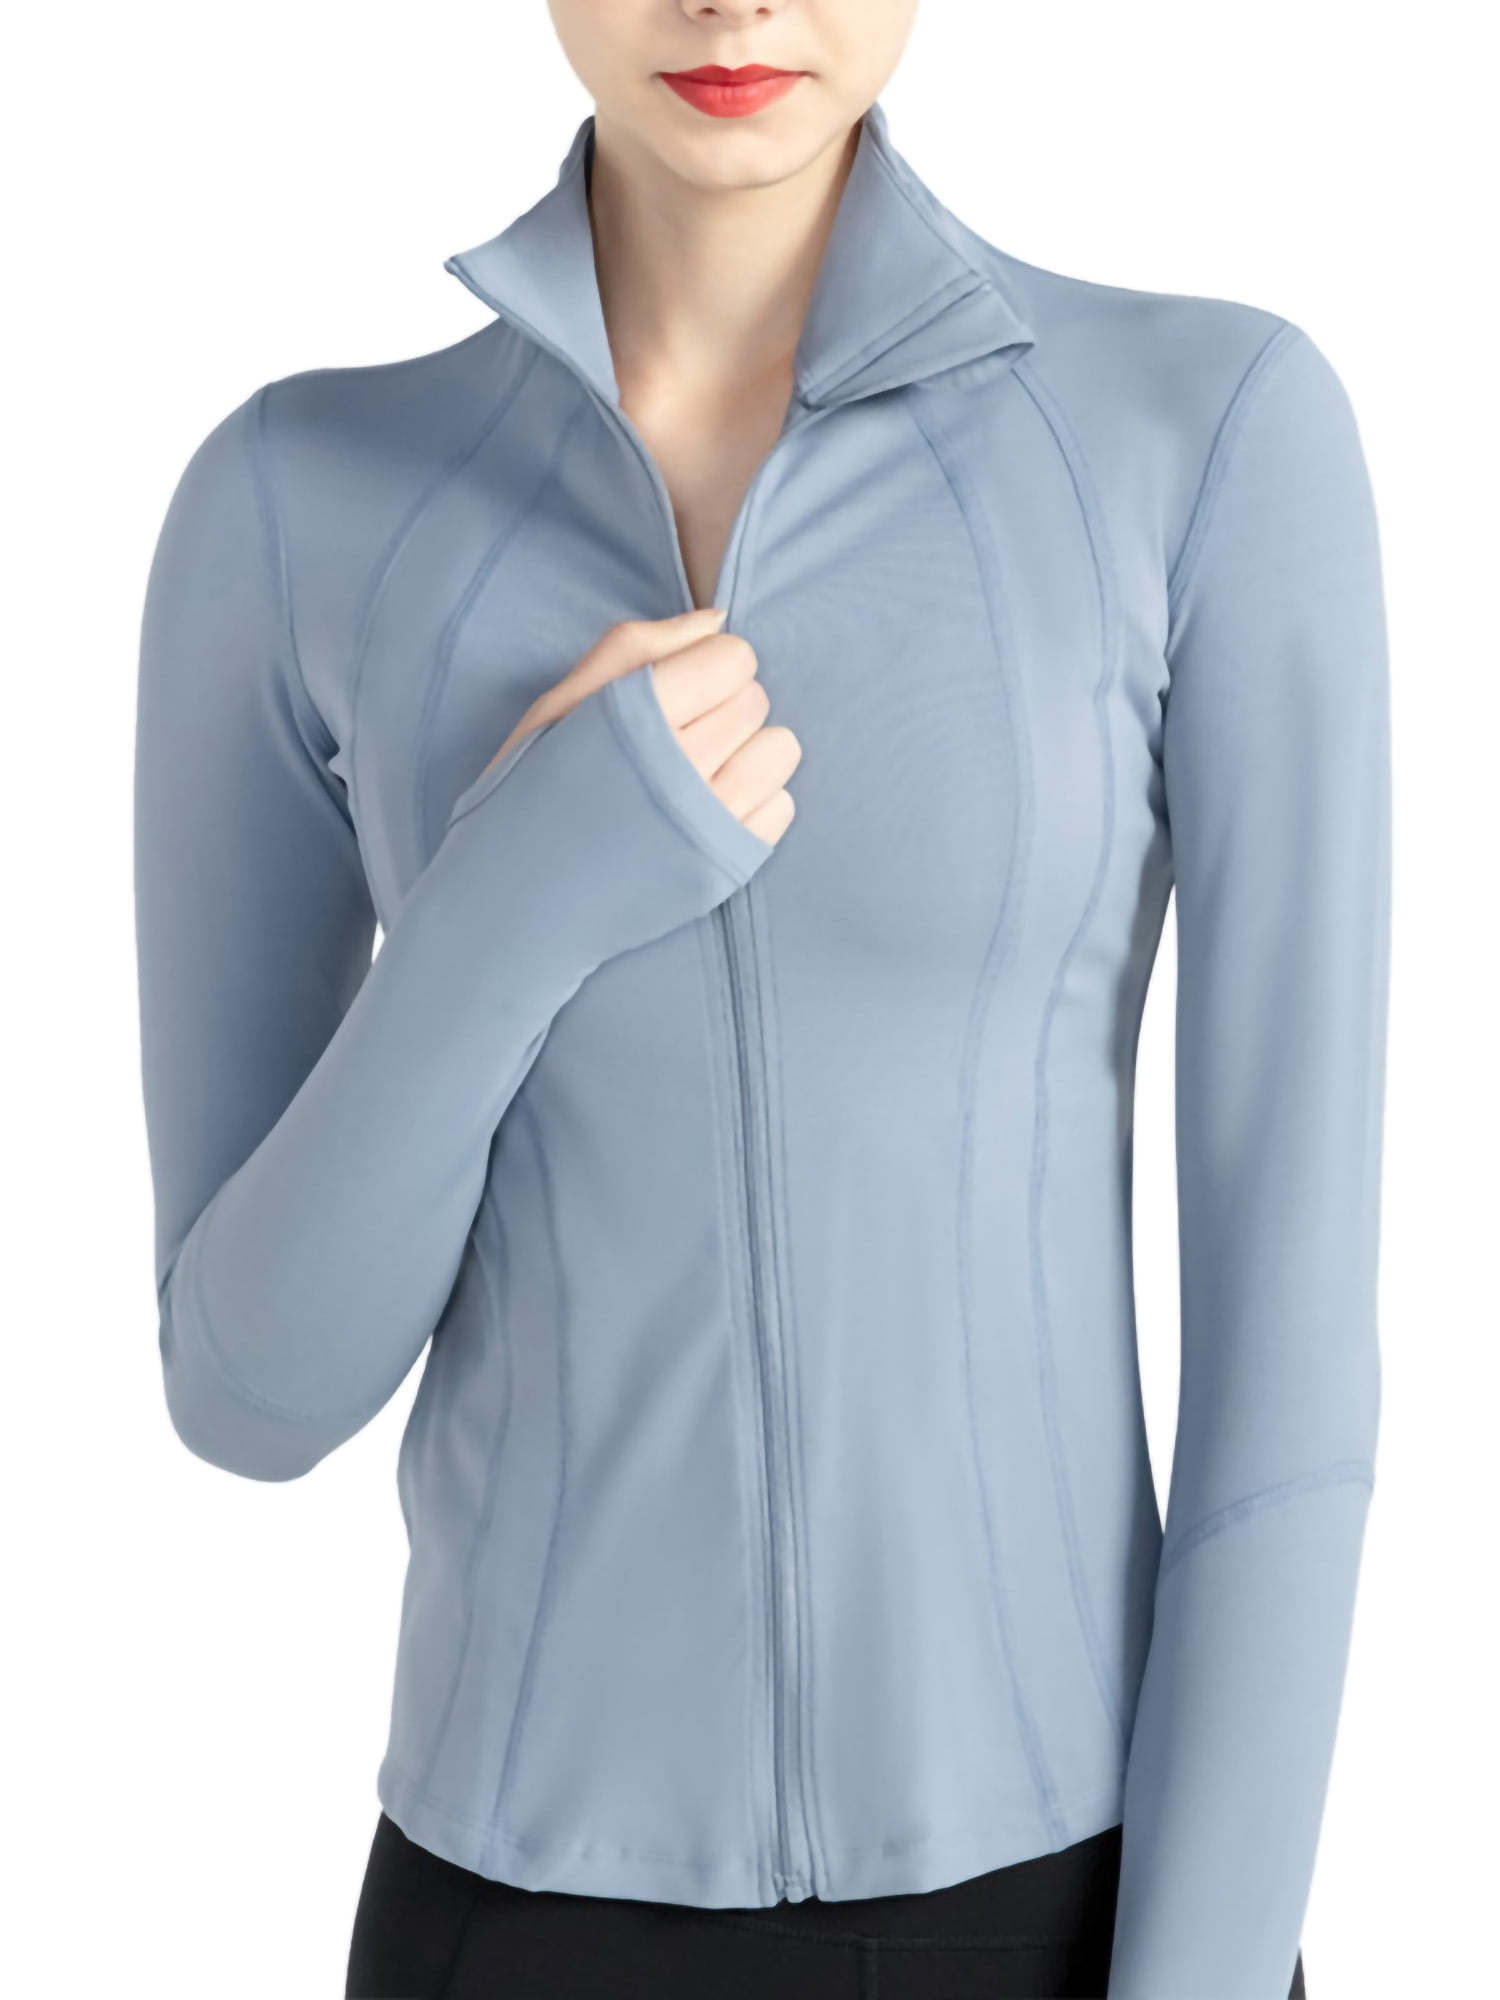 Full Zip Up Track Jacket for Women Running Training Exercise Yoga Jacket  Sportswear Workout Sports Jacket